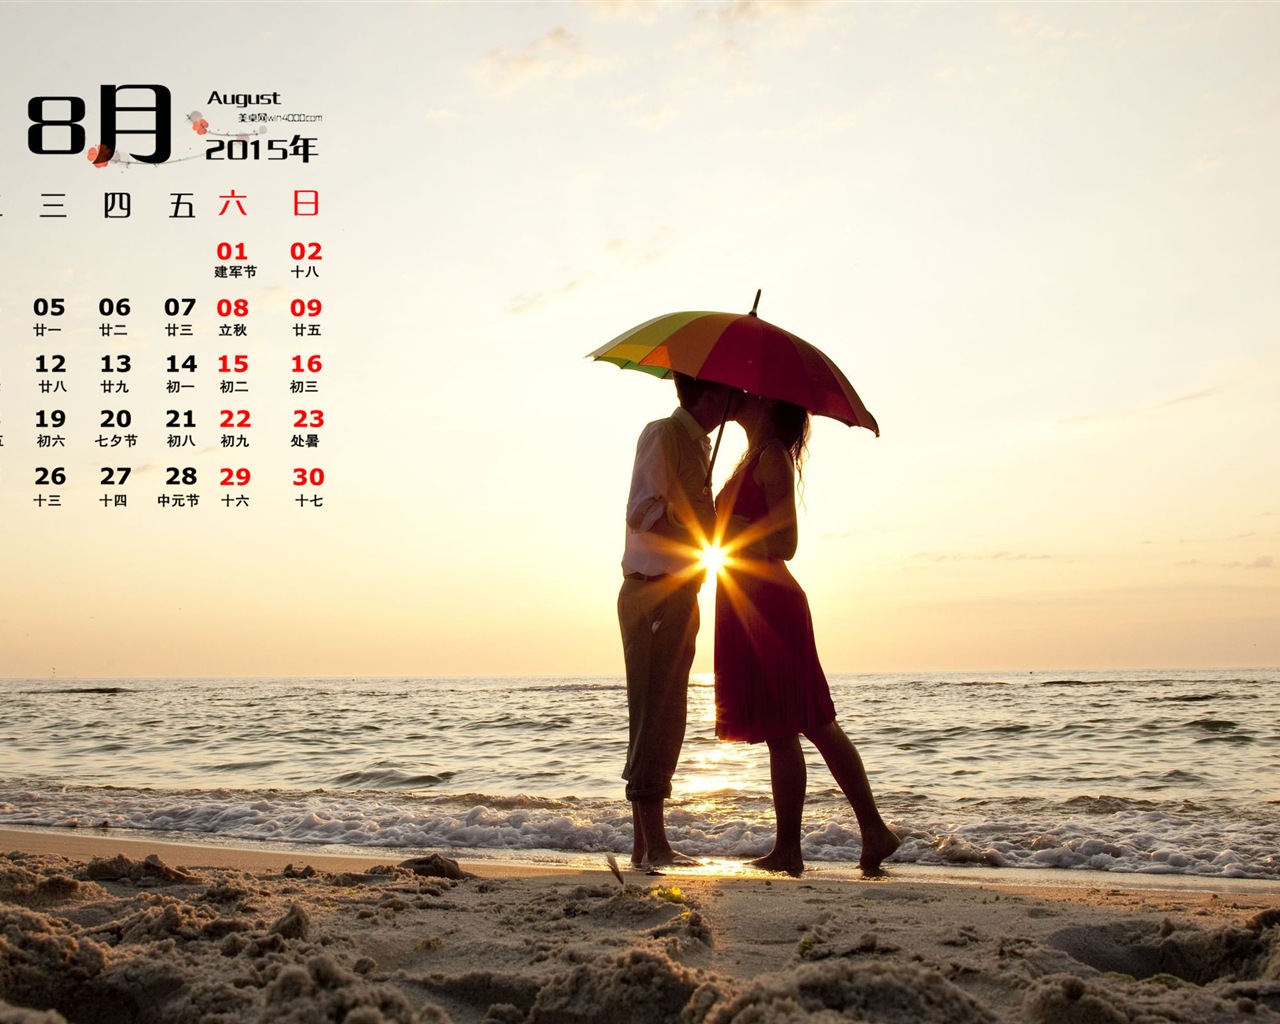 08. 2015 kalendář tapety (1) #14 - 1280x1024